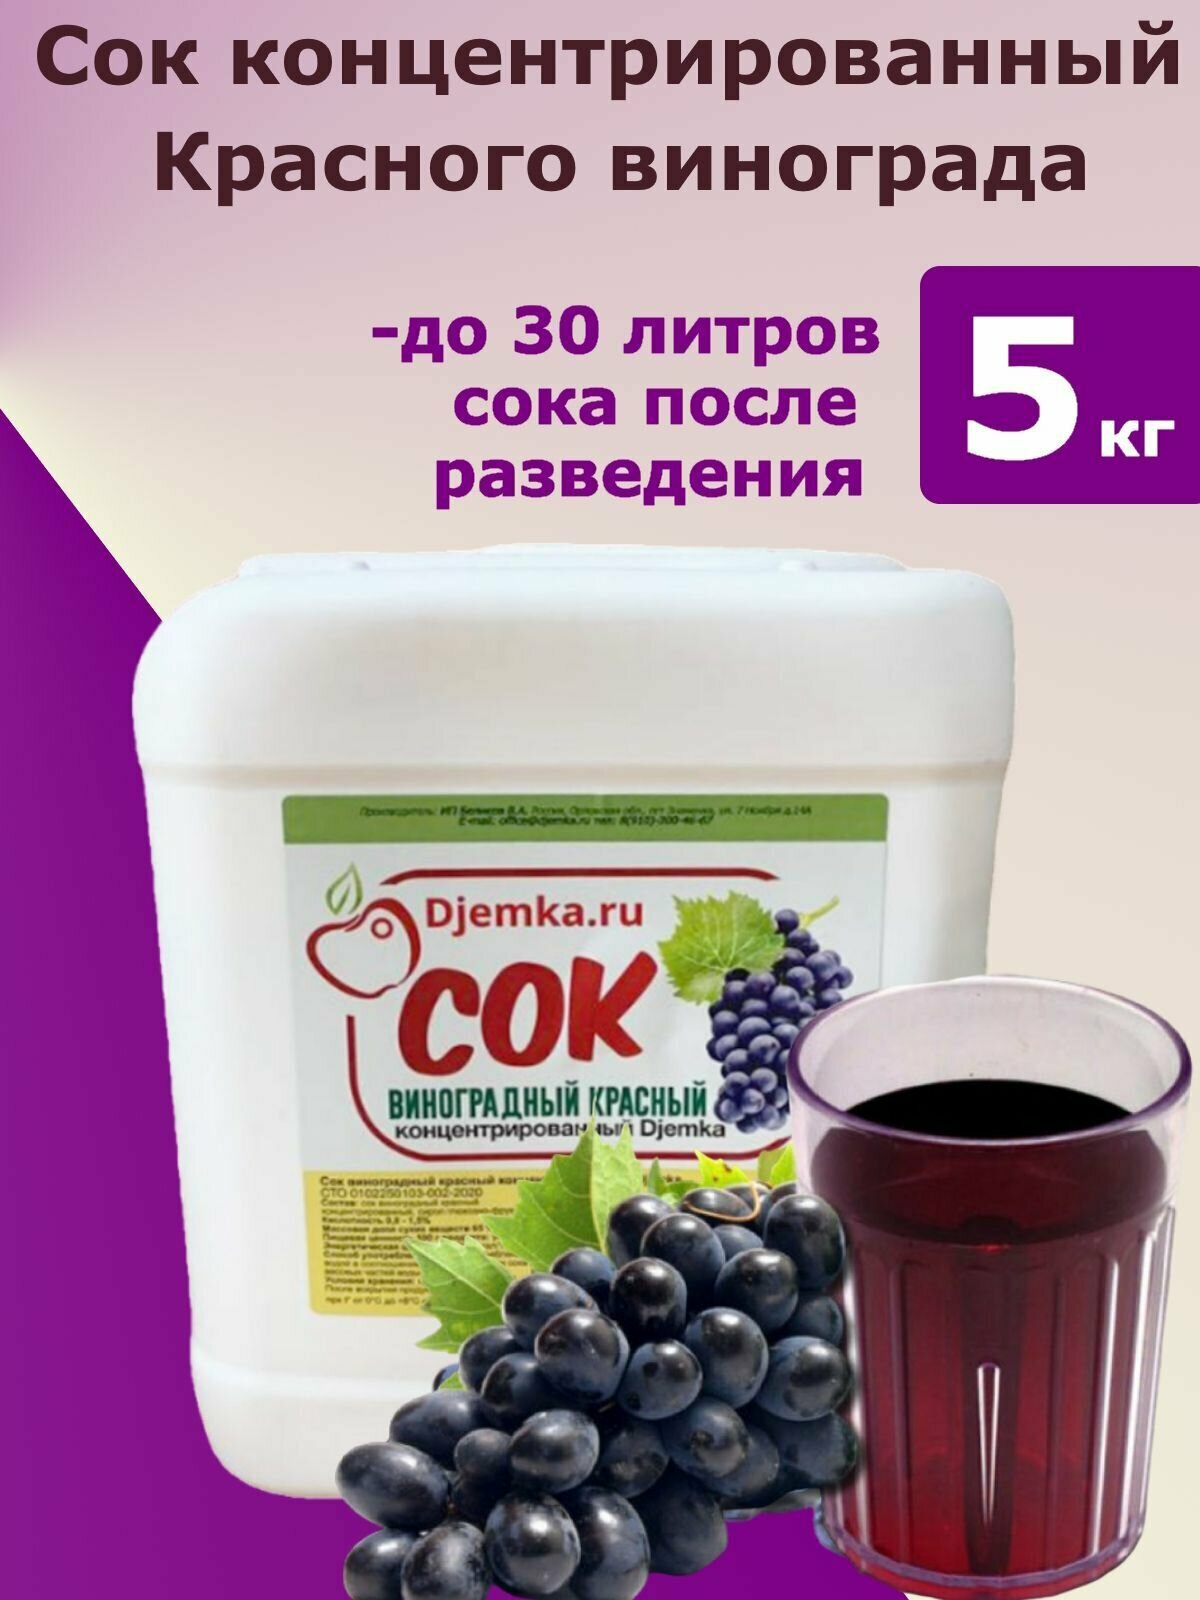 Сок концентрированный красного винограда Джемка, 5 кг, 1 шт